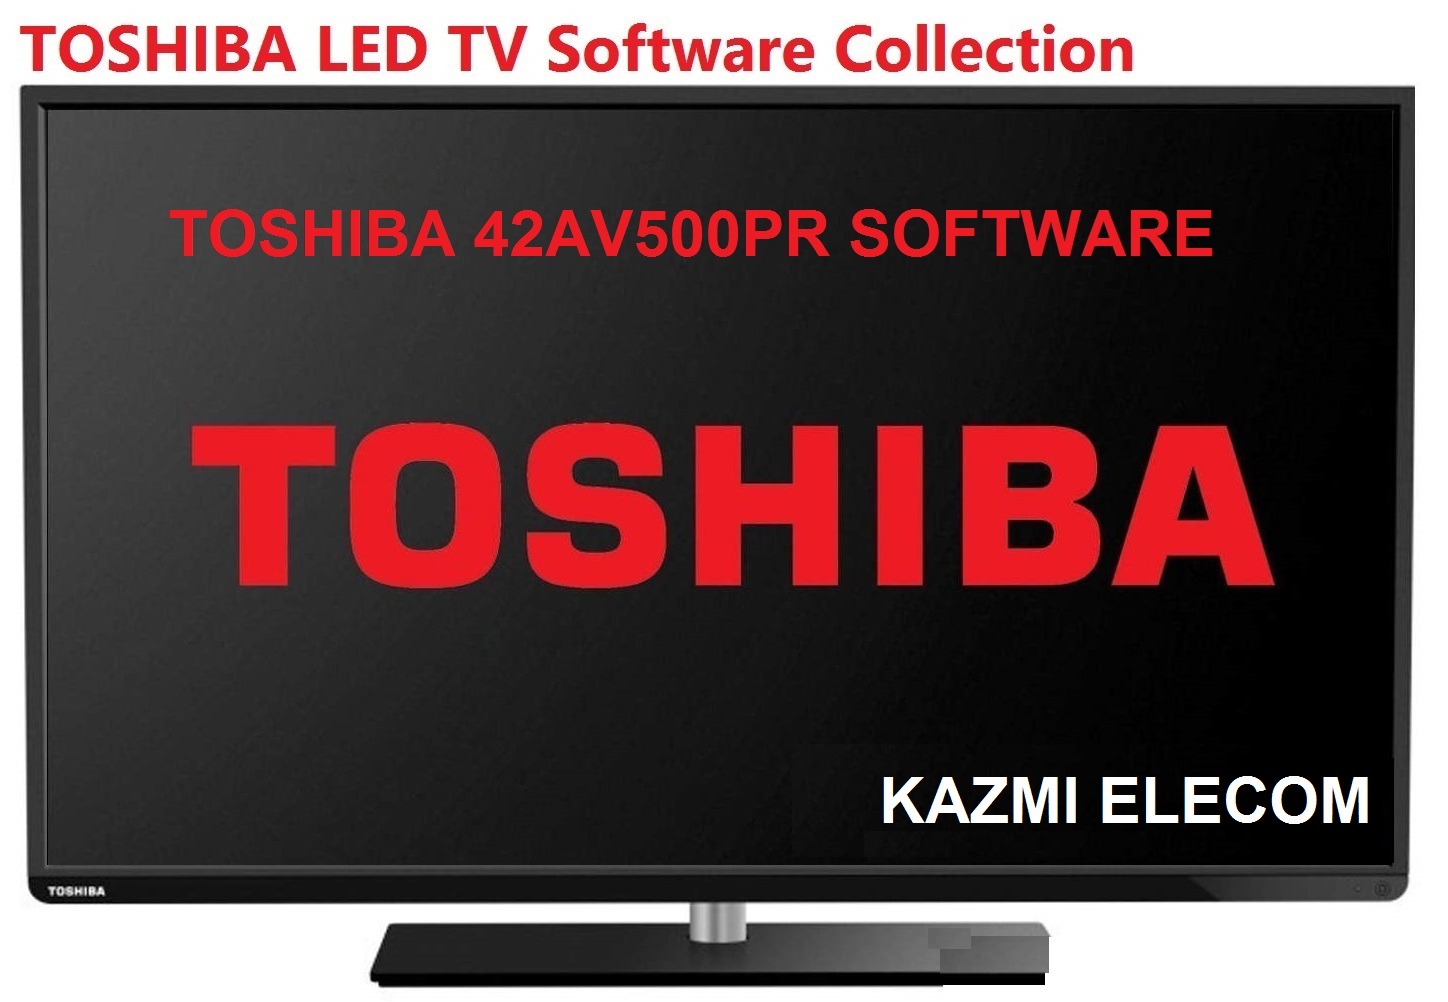 Toshiba 42Av500Pr